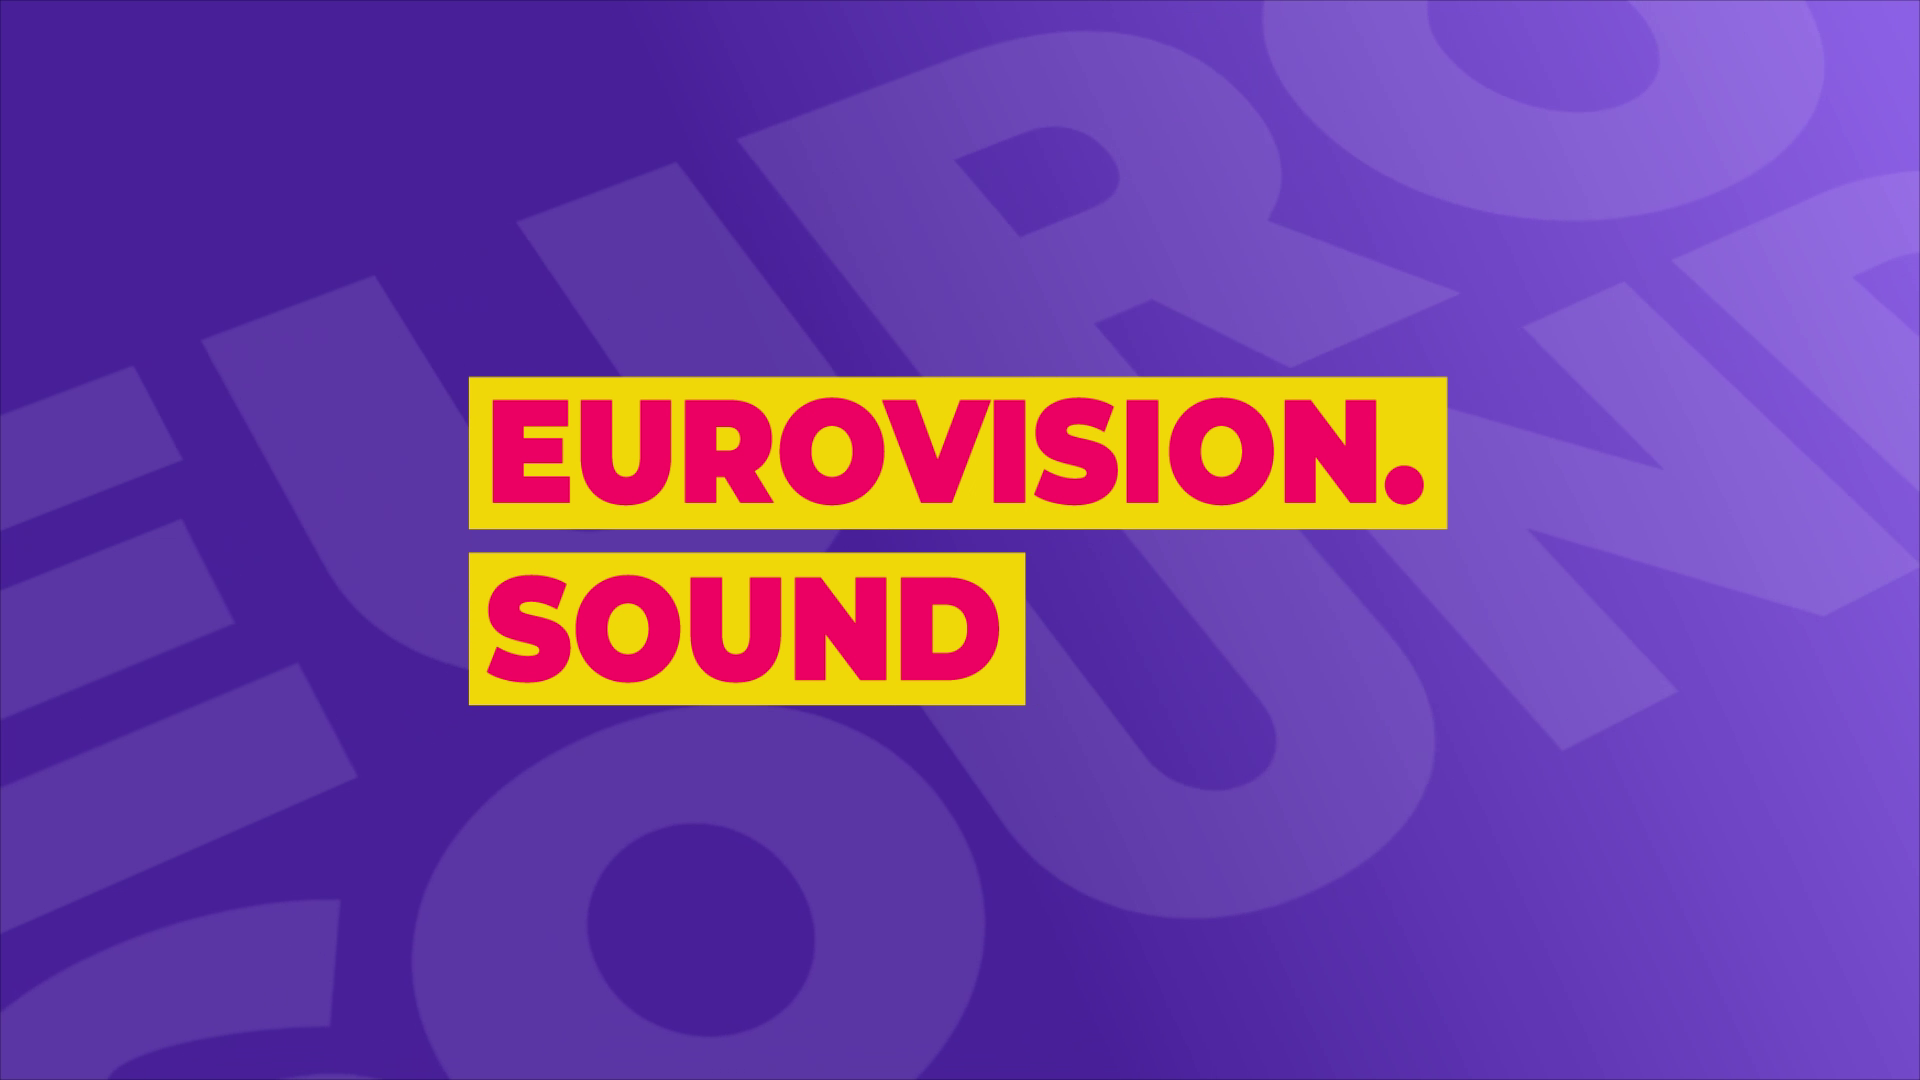 Eurovision Sound